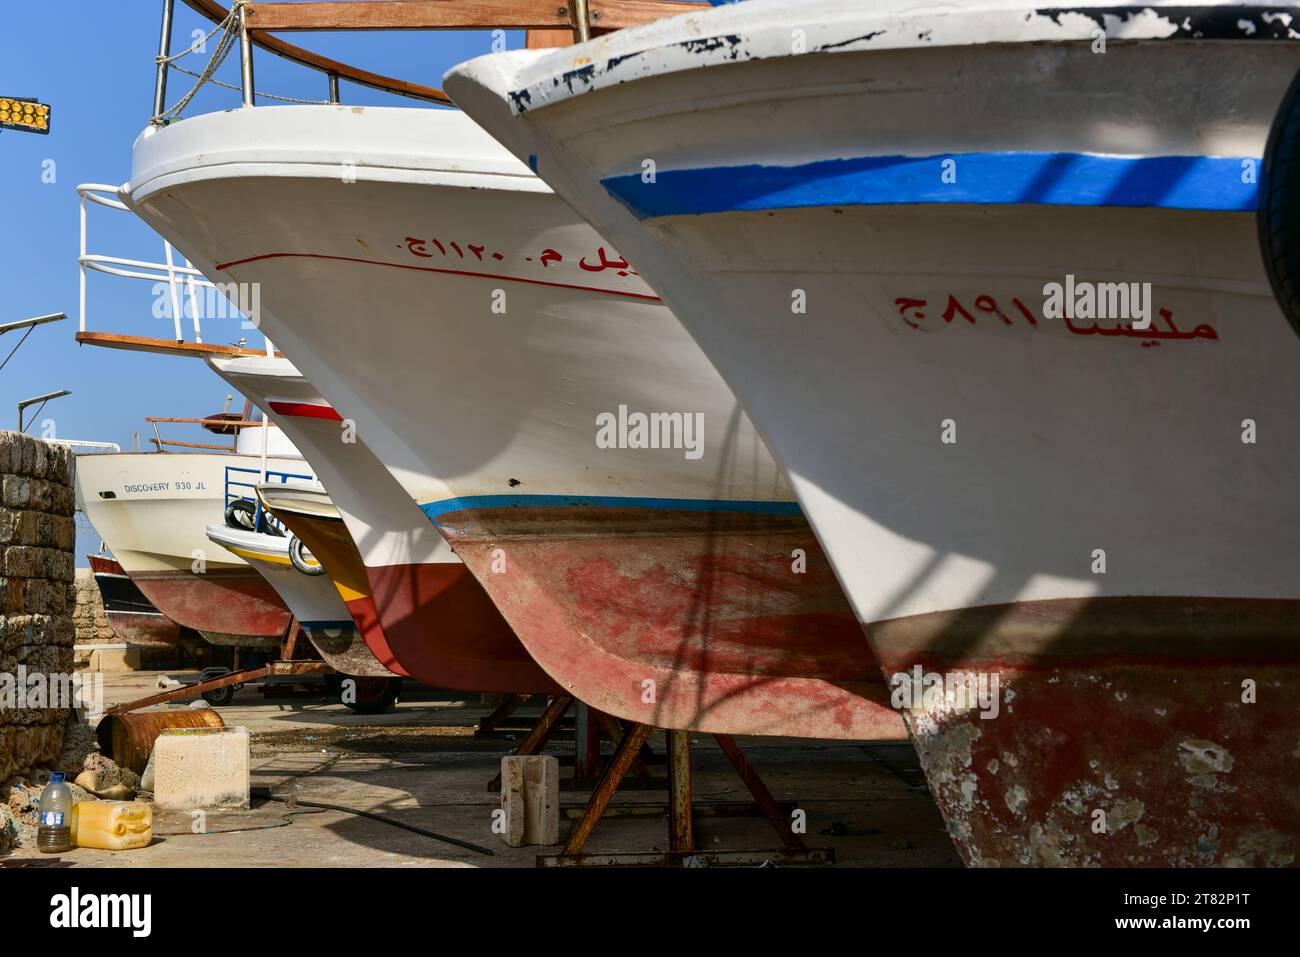 Bateaux de pêche amarrés au port de Byblos, une nouvelle couche de peinture vous attend. Le port date de 3000 av. J.-C., considéré comme le plus ancien du monde. Décembre 2022, Liban. Banque D'Images